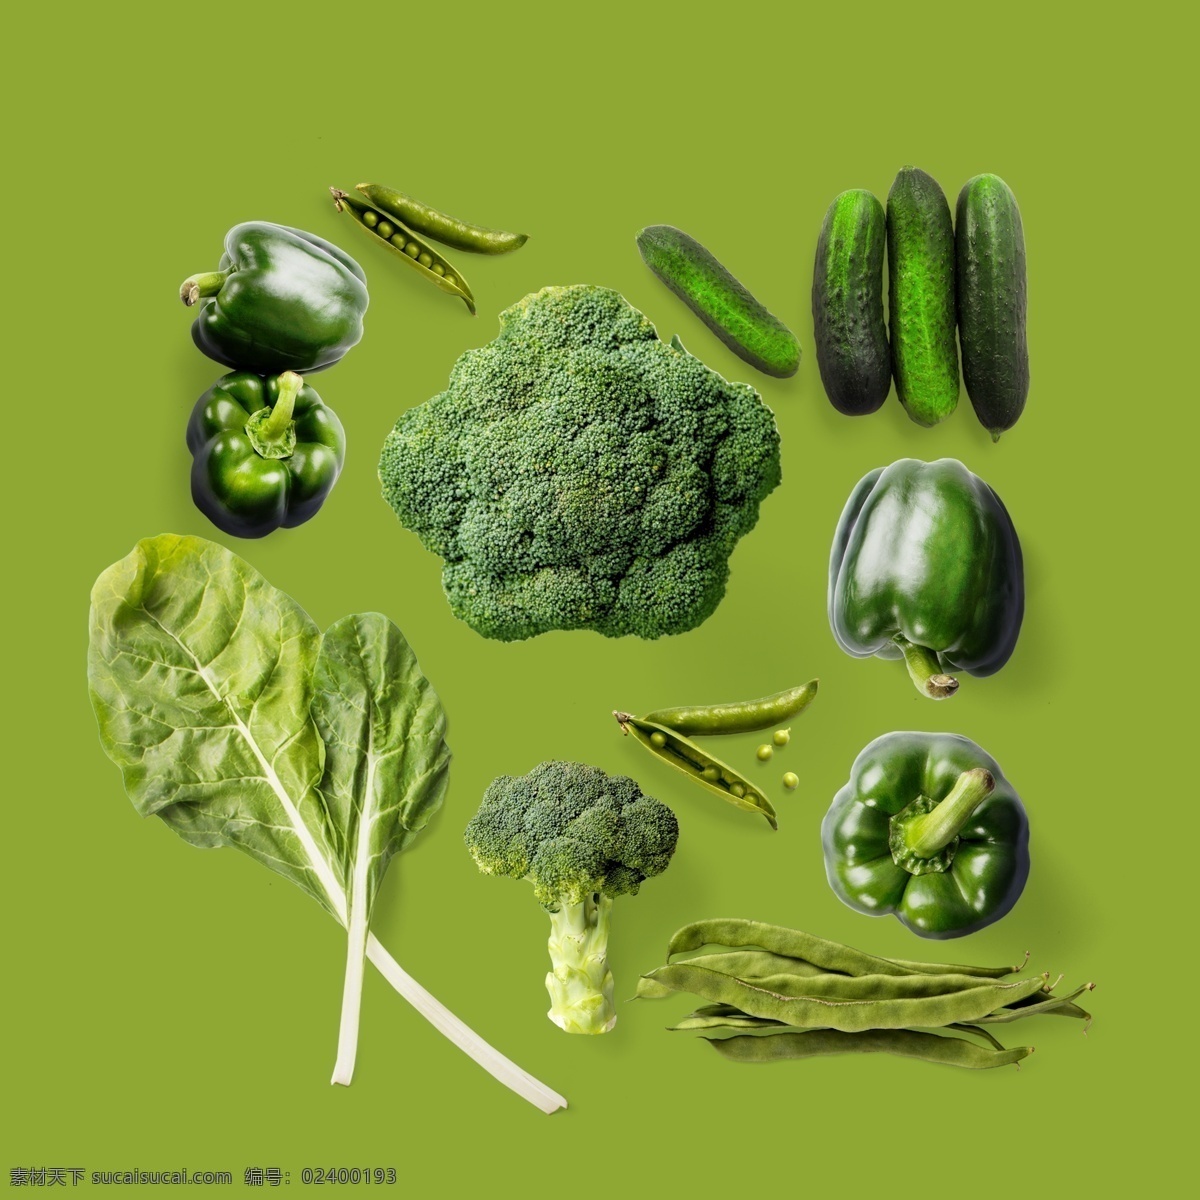 绿色蔬菜 蔬菜 西兰花 青椒 绿叶菜 黄瓜 扁豆 绿色 生物世界